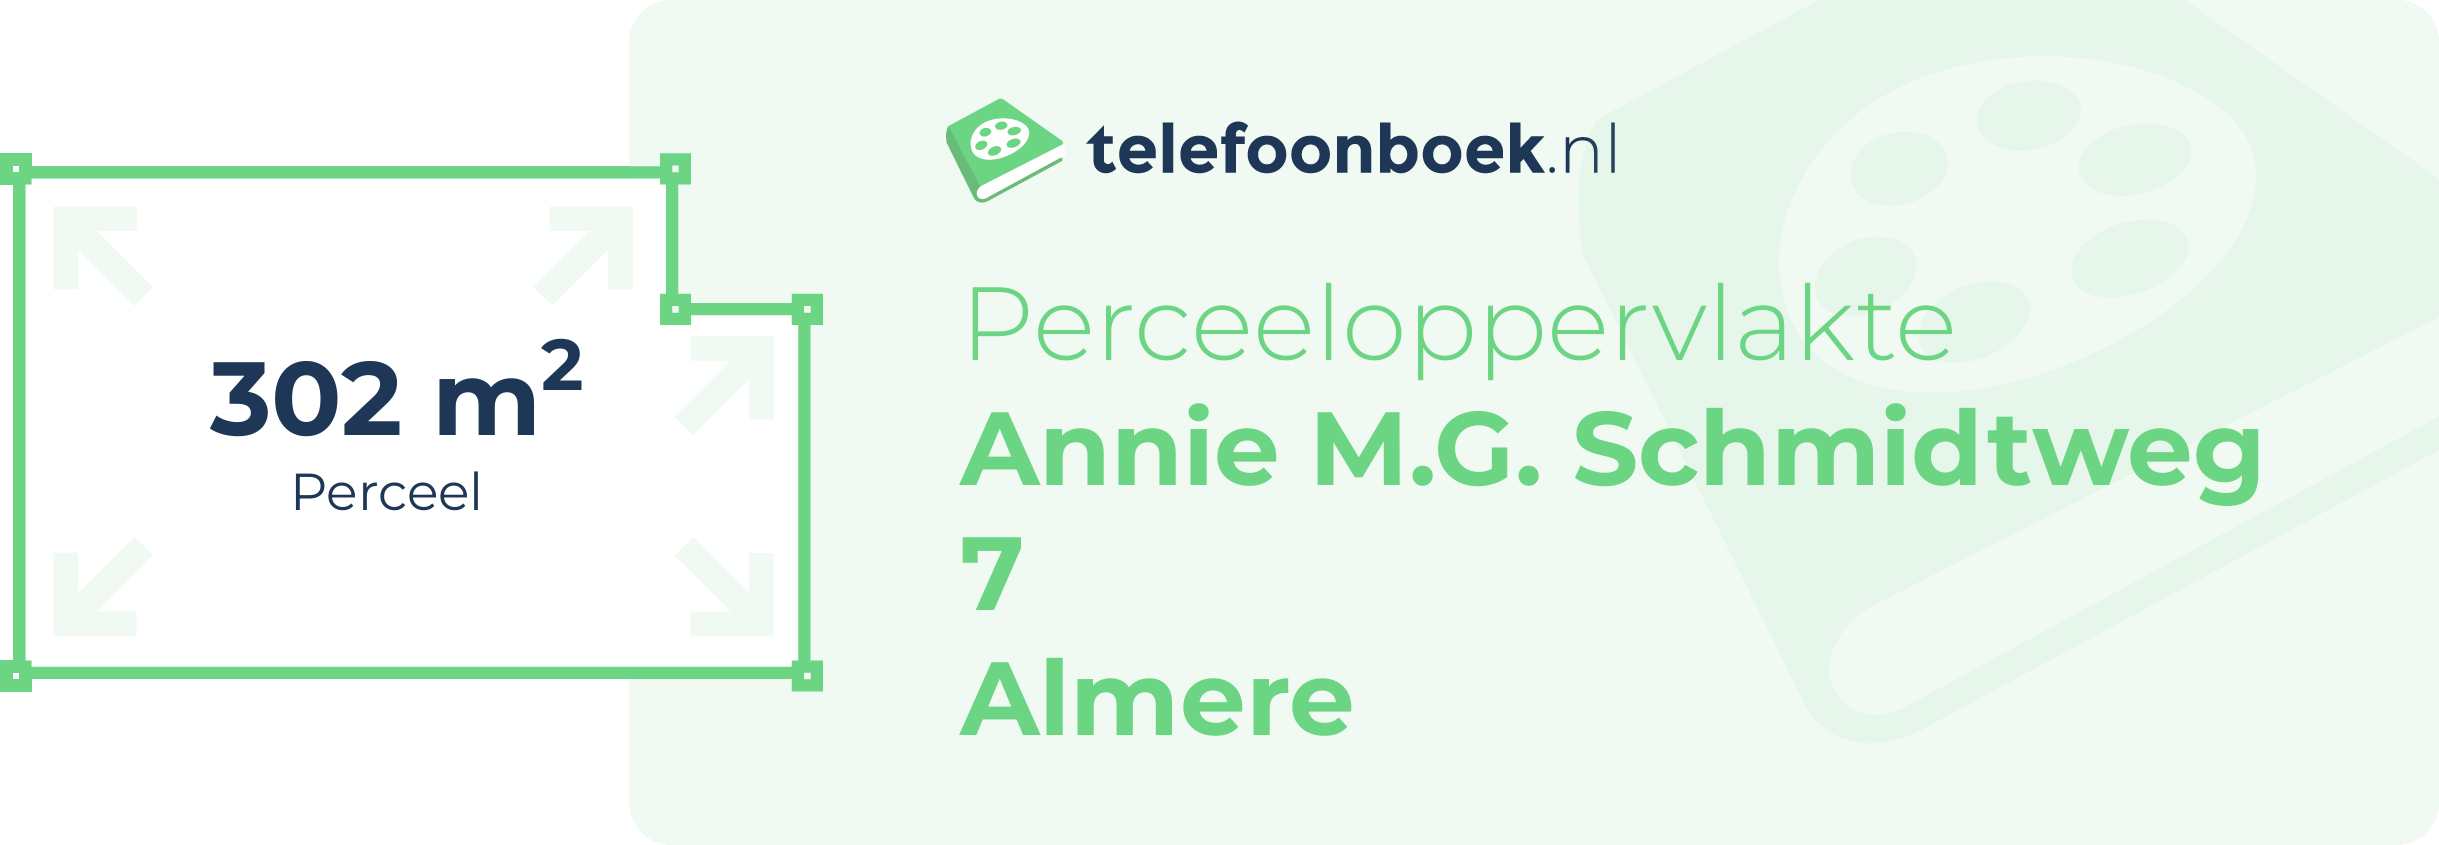 Perceeloppervlakte Annie M.G. Schmidtweg 7 Almere